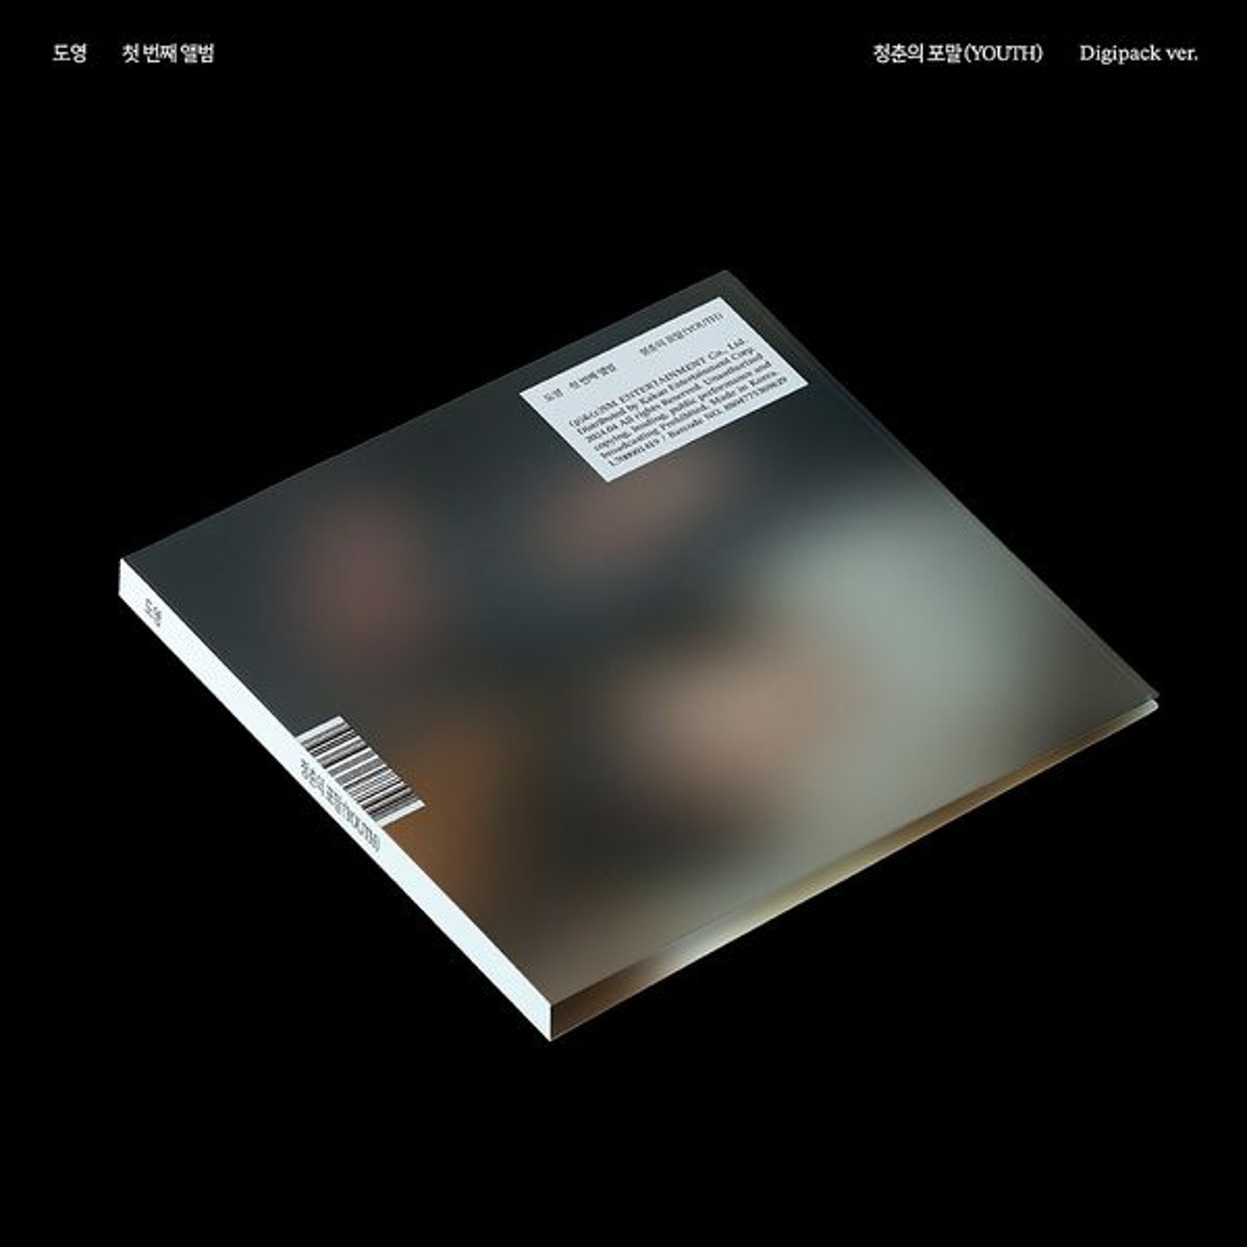 ドヨン(DOYOUNG) - 1stアルバム [青春の泡沫(YOUTH)] (Digipack Ver.)